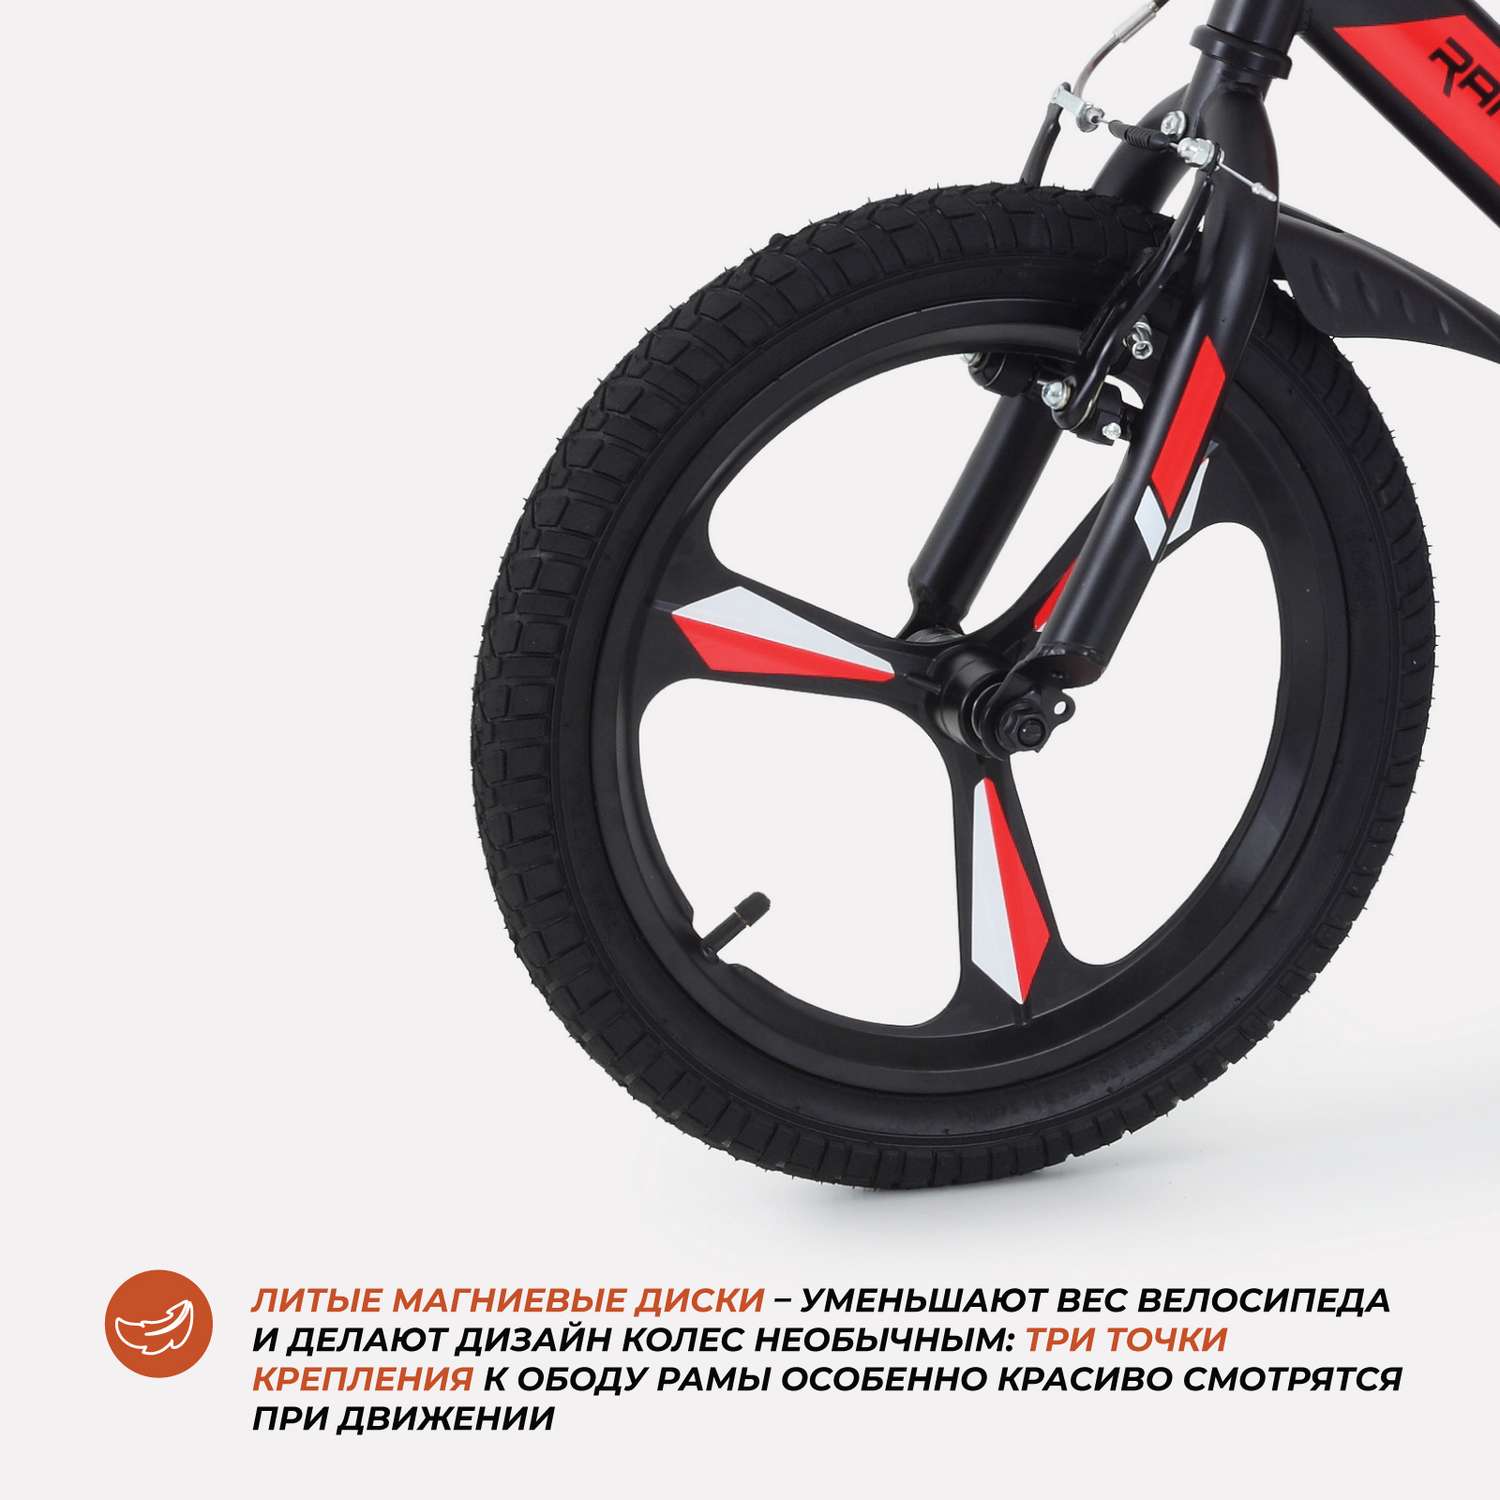 Велосипед 2-х колесный детский Rant Eclipse черно-красный 16 - фото 3